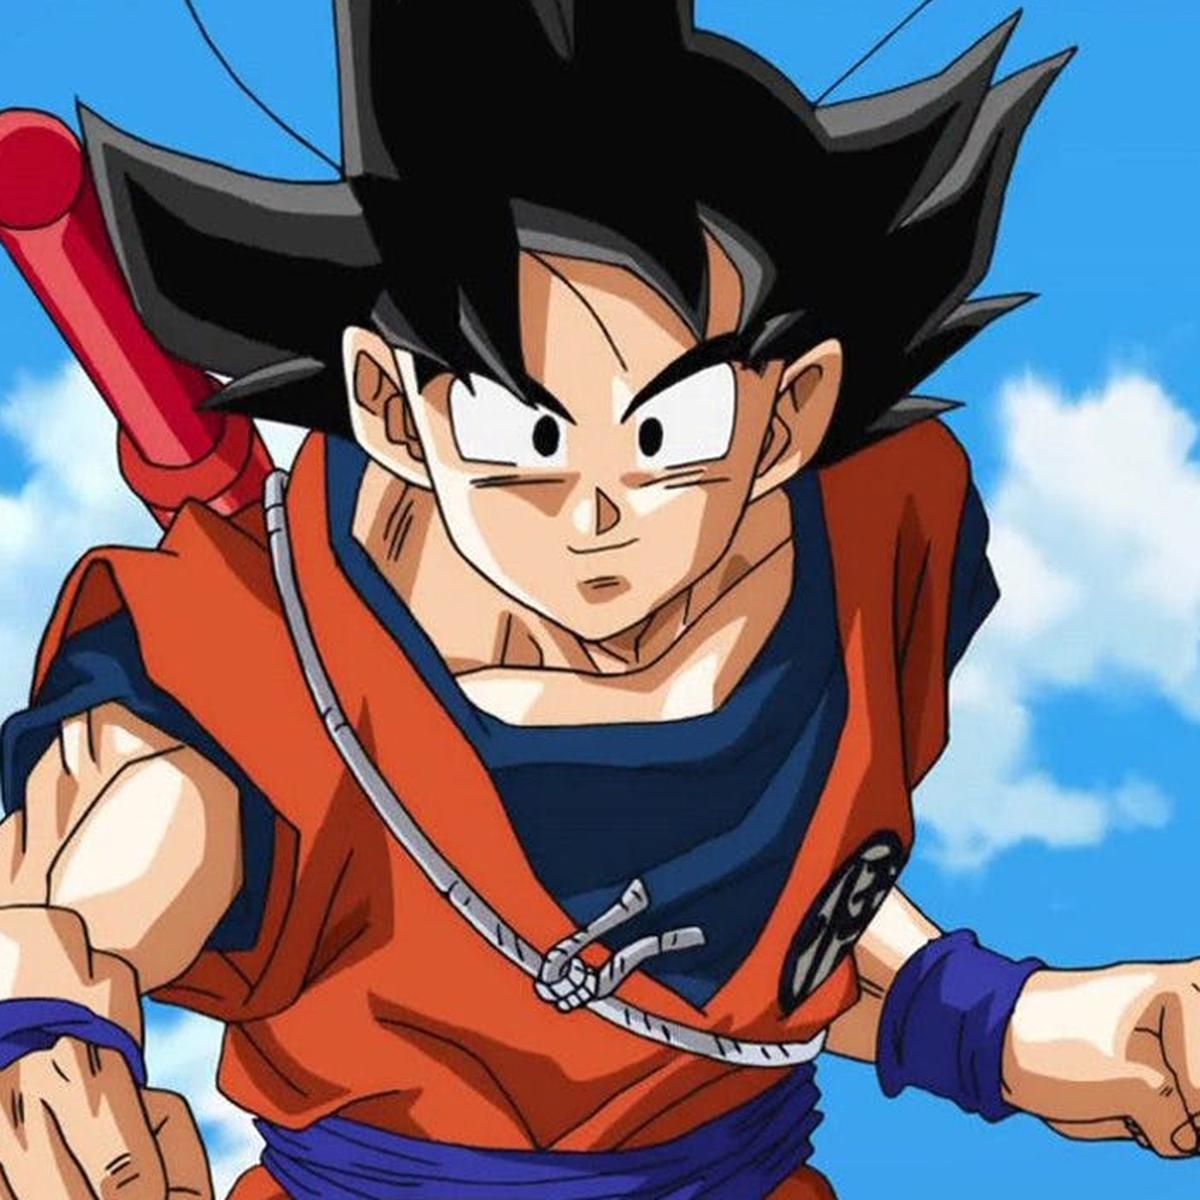 Dragon Ball Super' revela nuevos bocetos de Goku, Vegeta, Nappa y Broly  [FOTOS] | DEPOR-PLAY | DEPOR